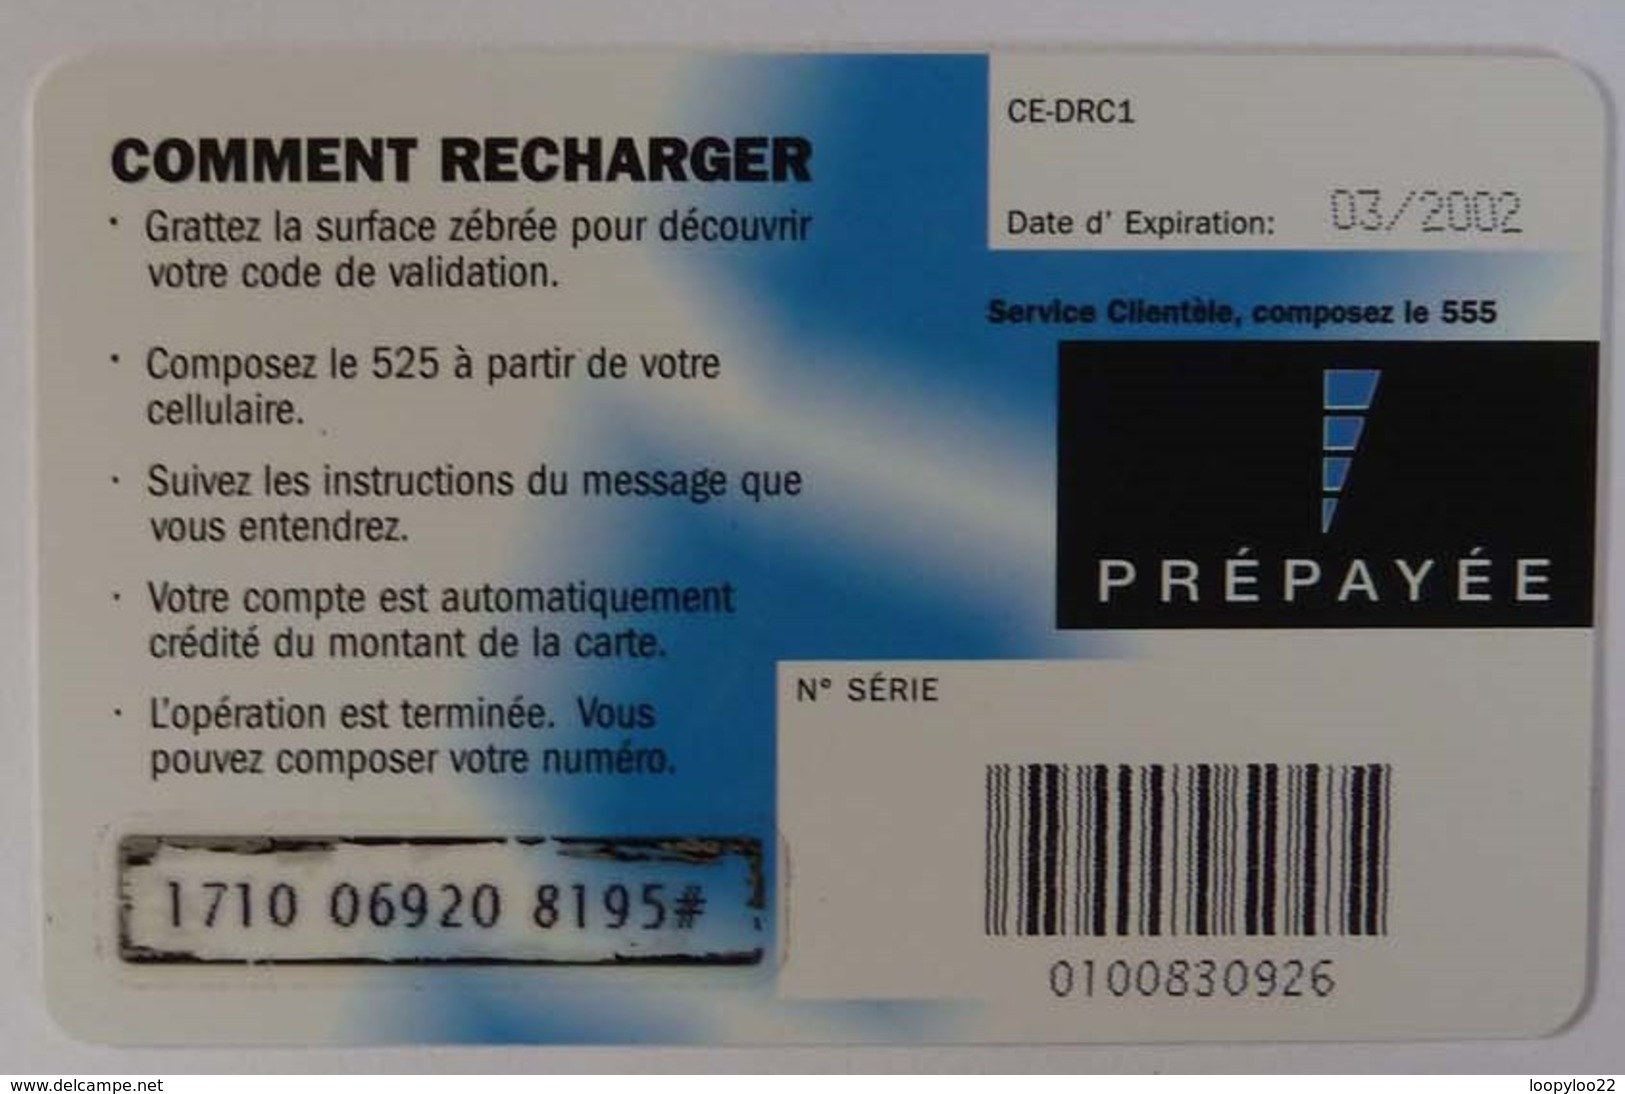 CONGO - Celtel - Prepaid - Recharge - A Vous La Parole - 03.02 - Used - Congo